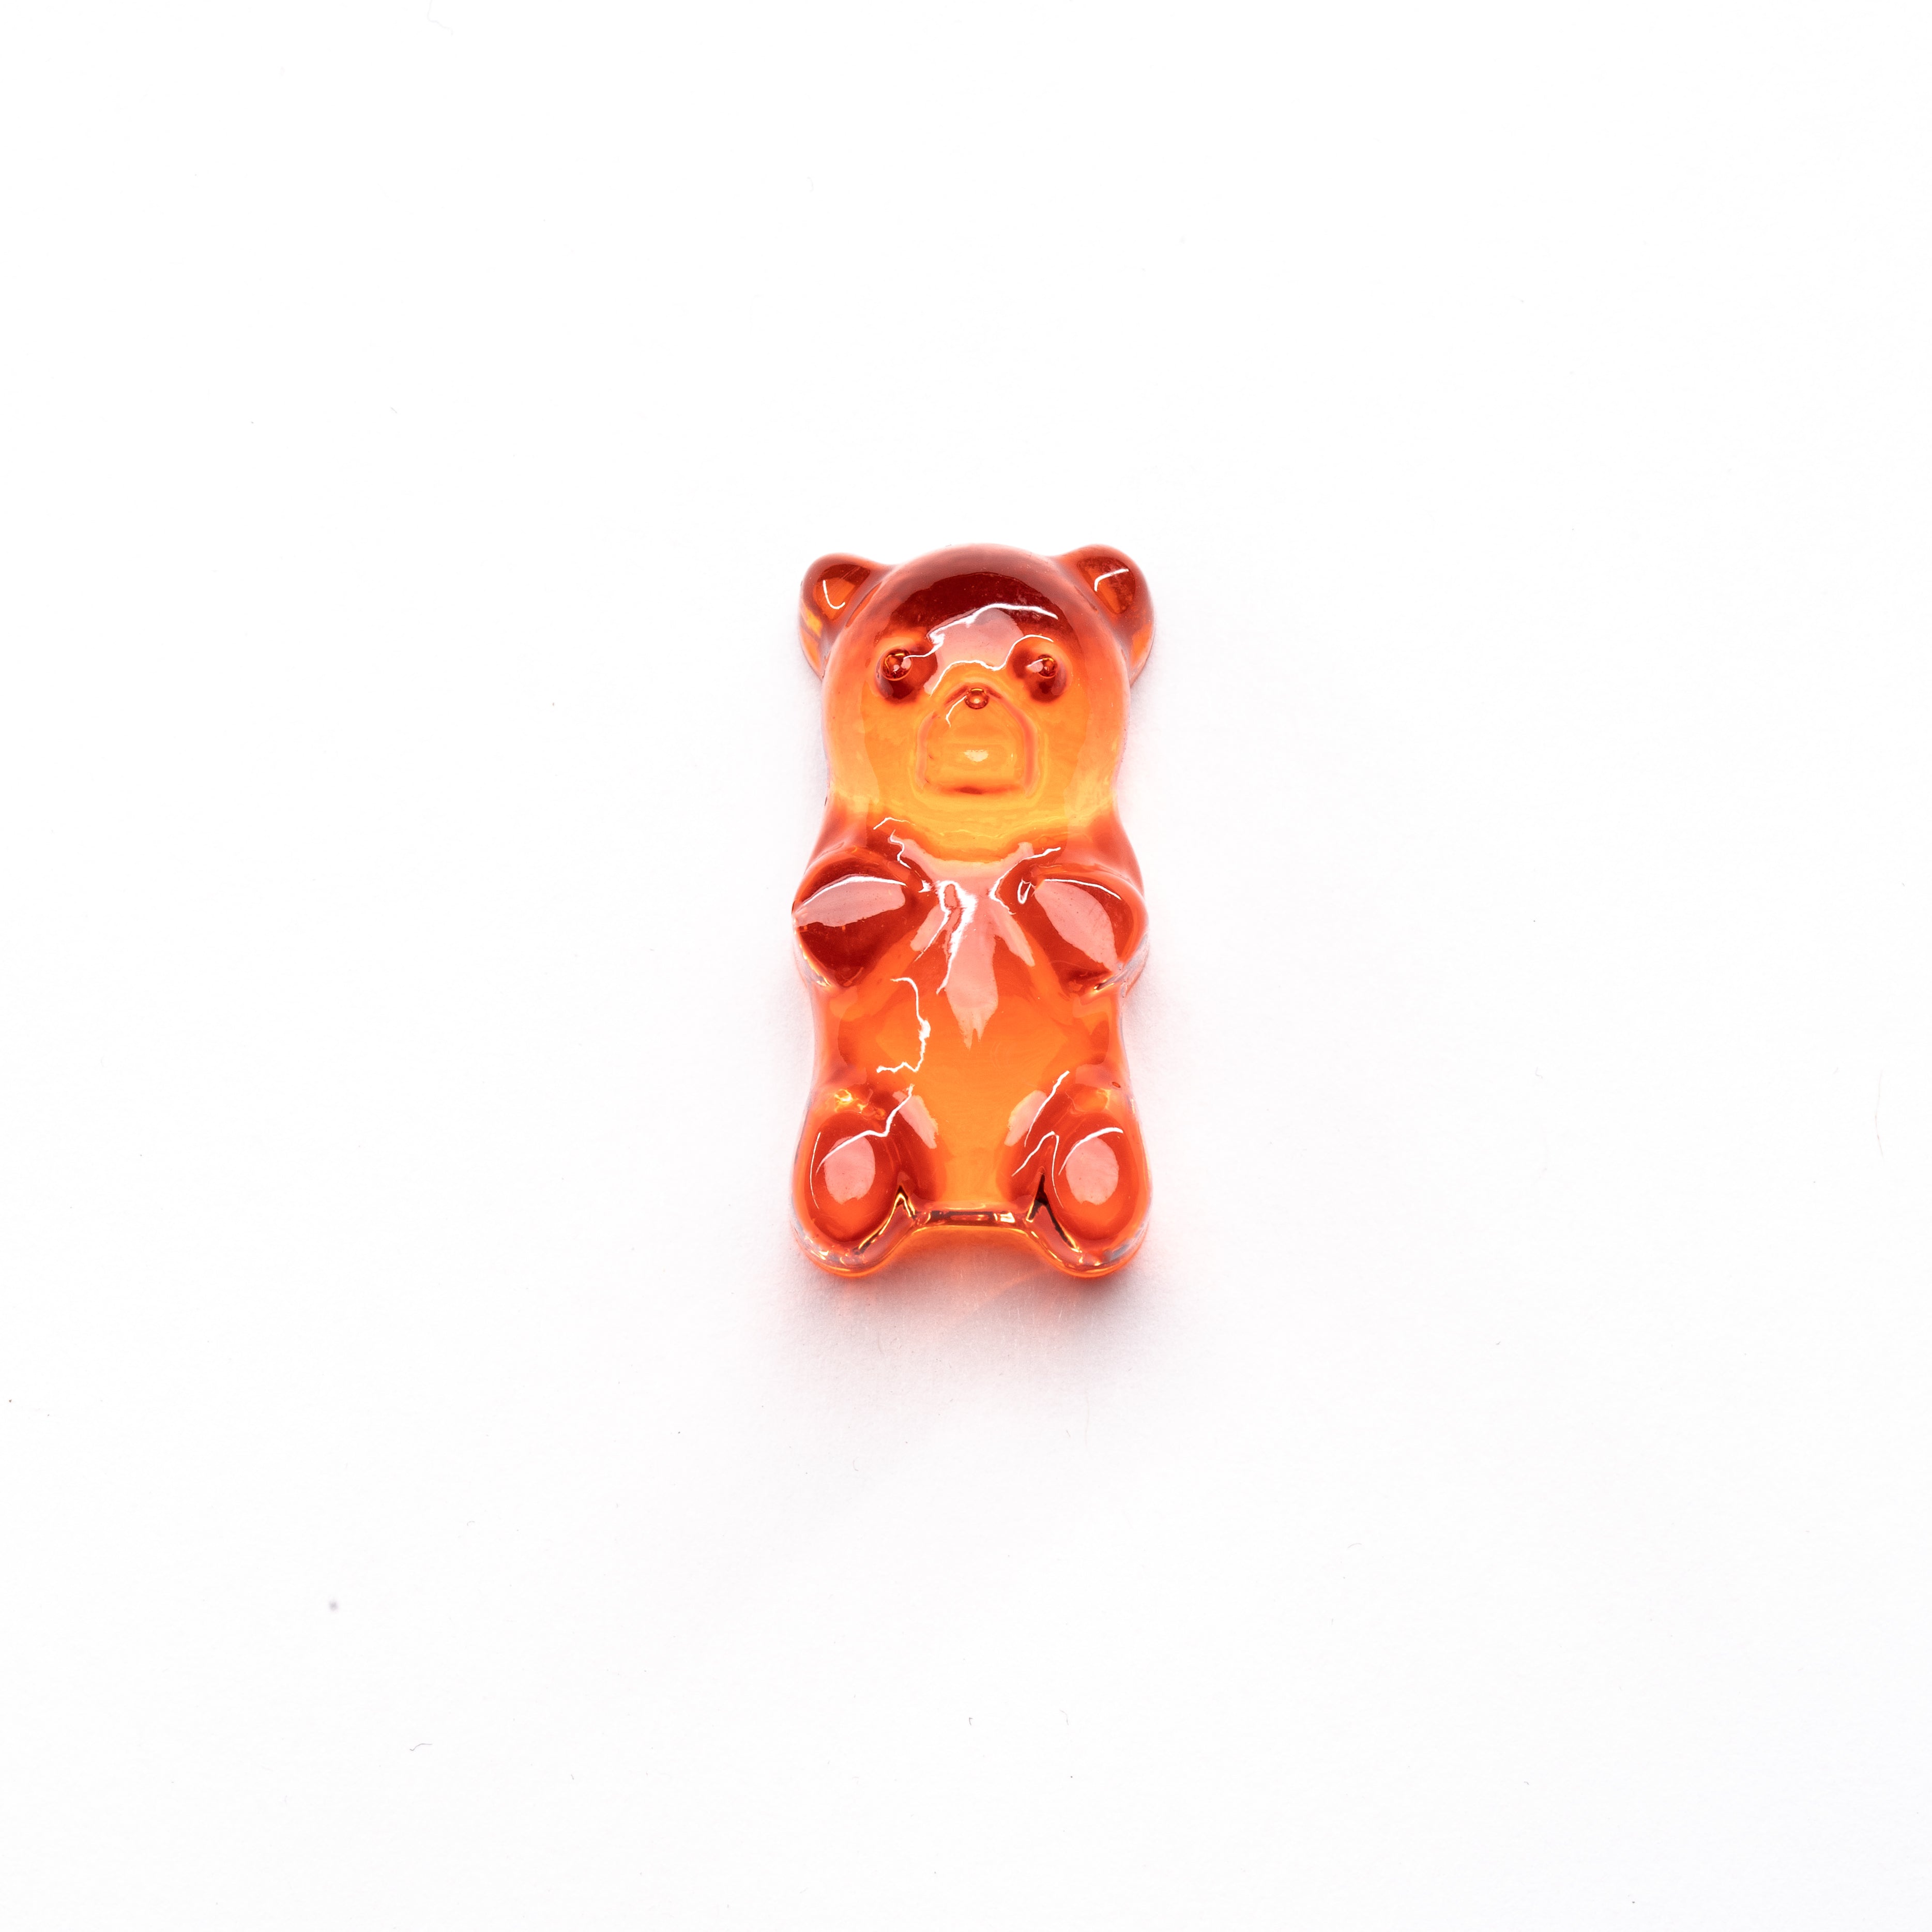 4mL Gummy Bear Candy Full Sheet Mold - 357 Cavities - 22144